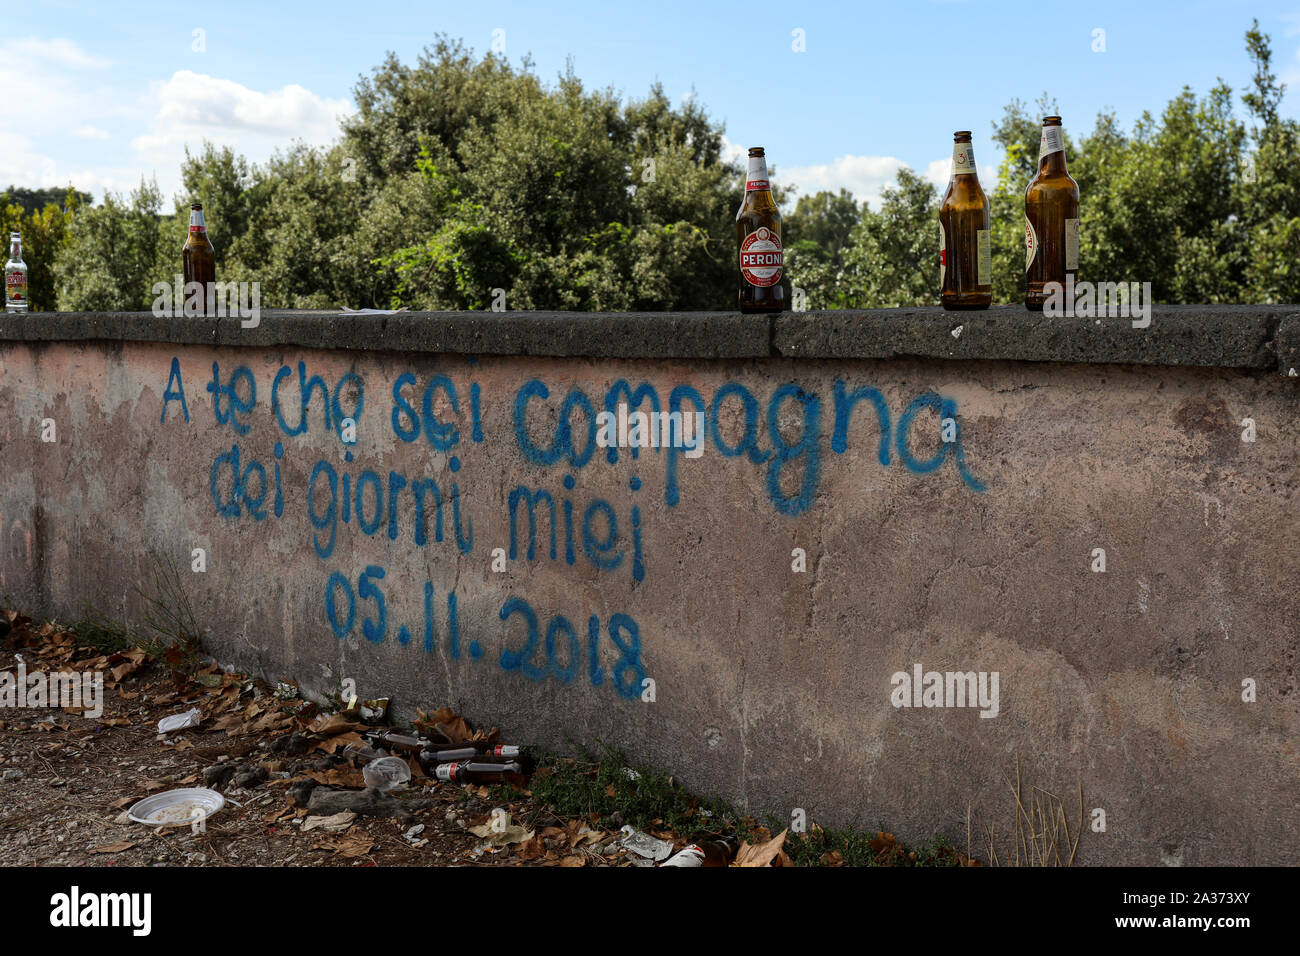 A te che sei compagna dei giorni miei - message on the wall on Trastevere district, Rome, Italy Stock Photo